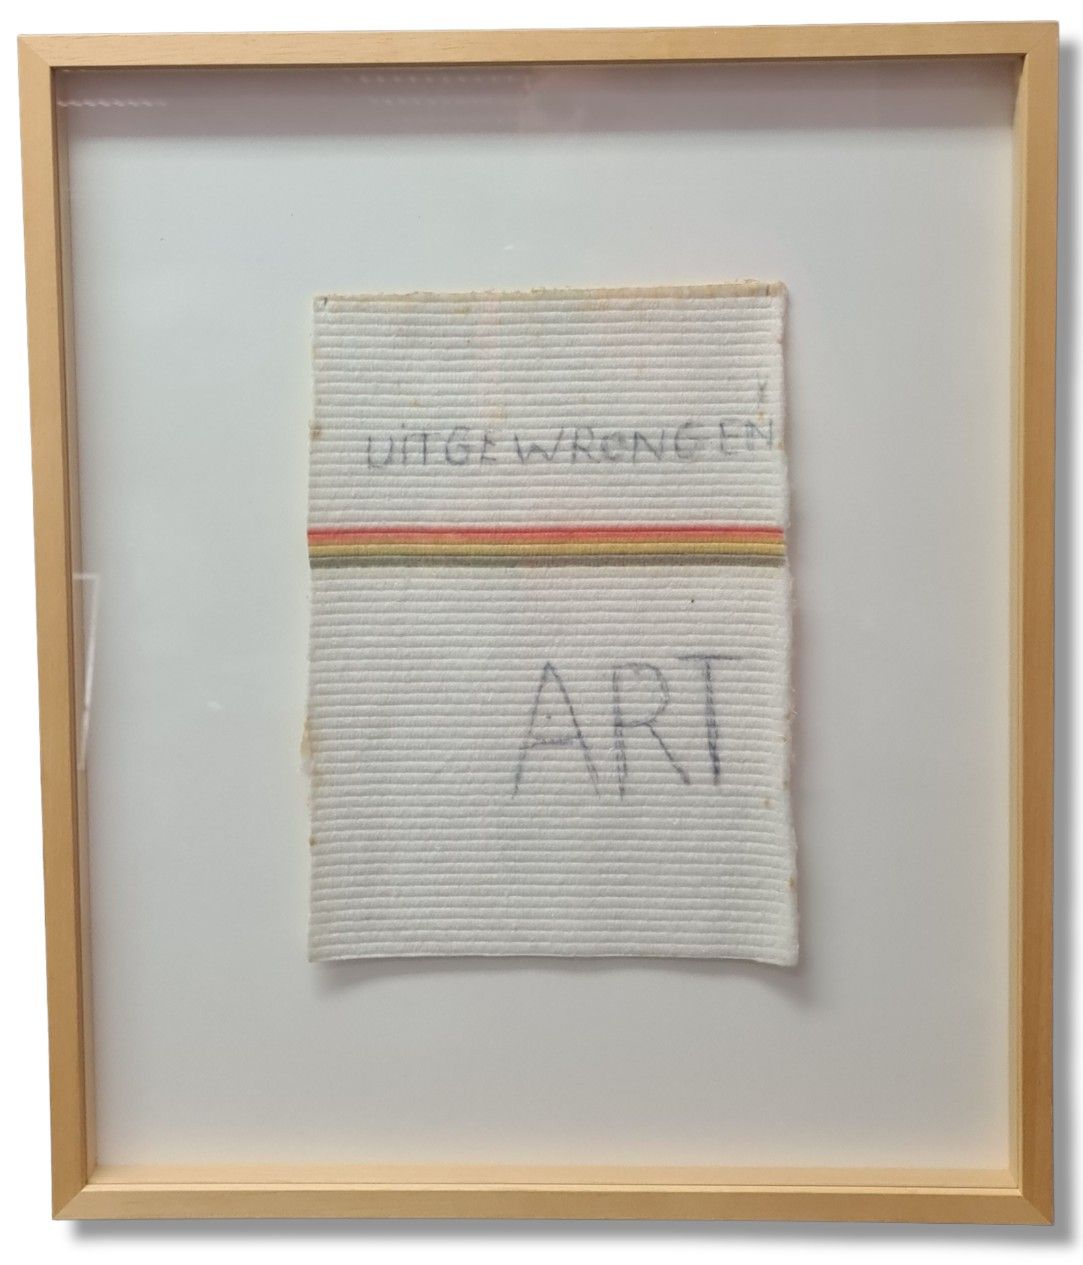 Jan FABRE( 1958- ) 
扬-法布尔(1958-)

违反艺术的行为。

"Bic艺术。

一片拖把。

约20 x 27厘米。

100份。

&hellip;